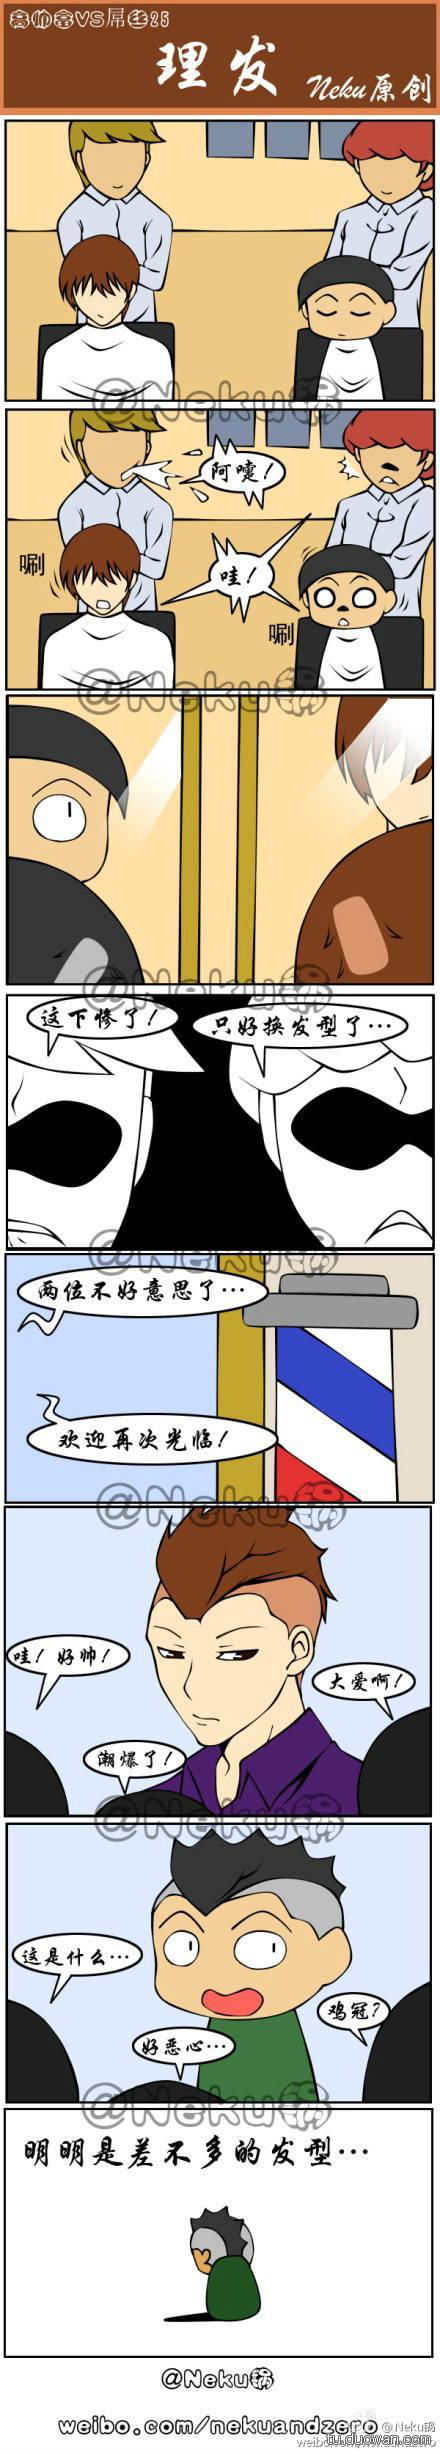 邪恶漫画爆笑囧图第236刊：屌丝与高帅富的待遇